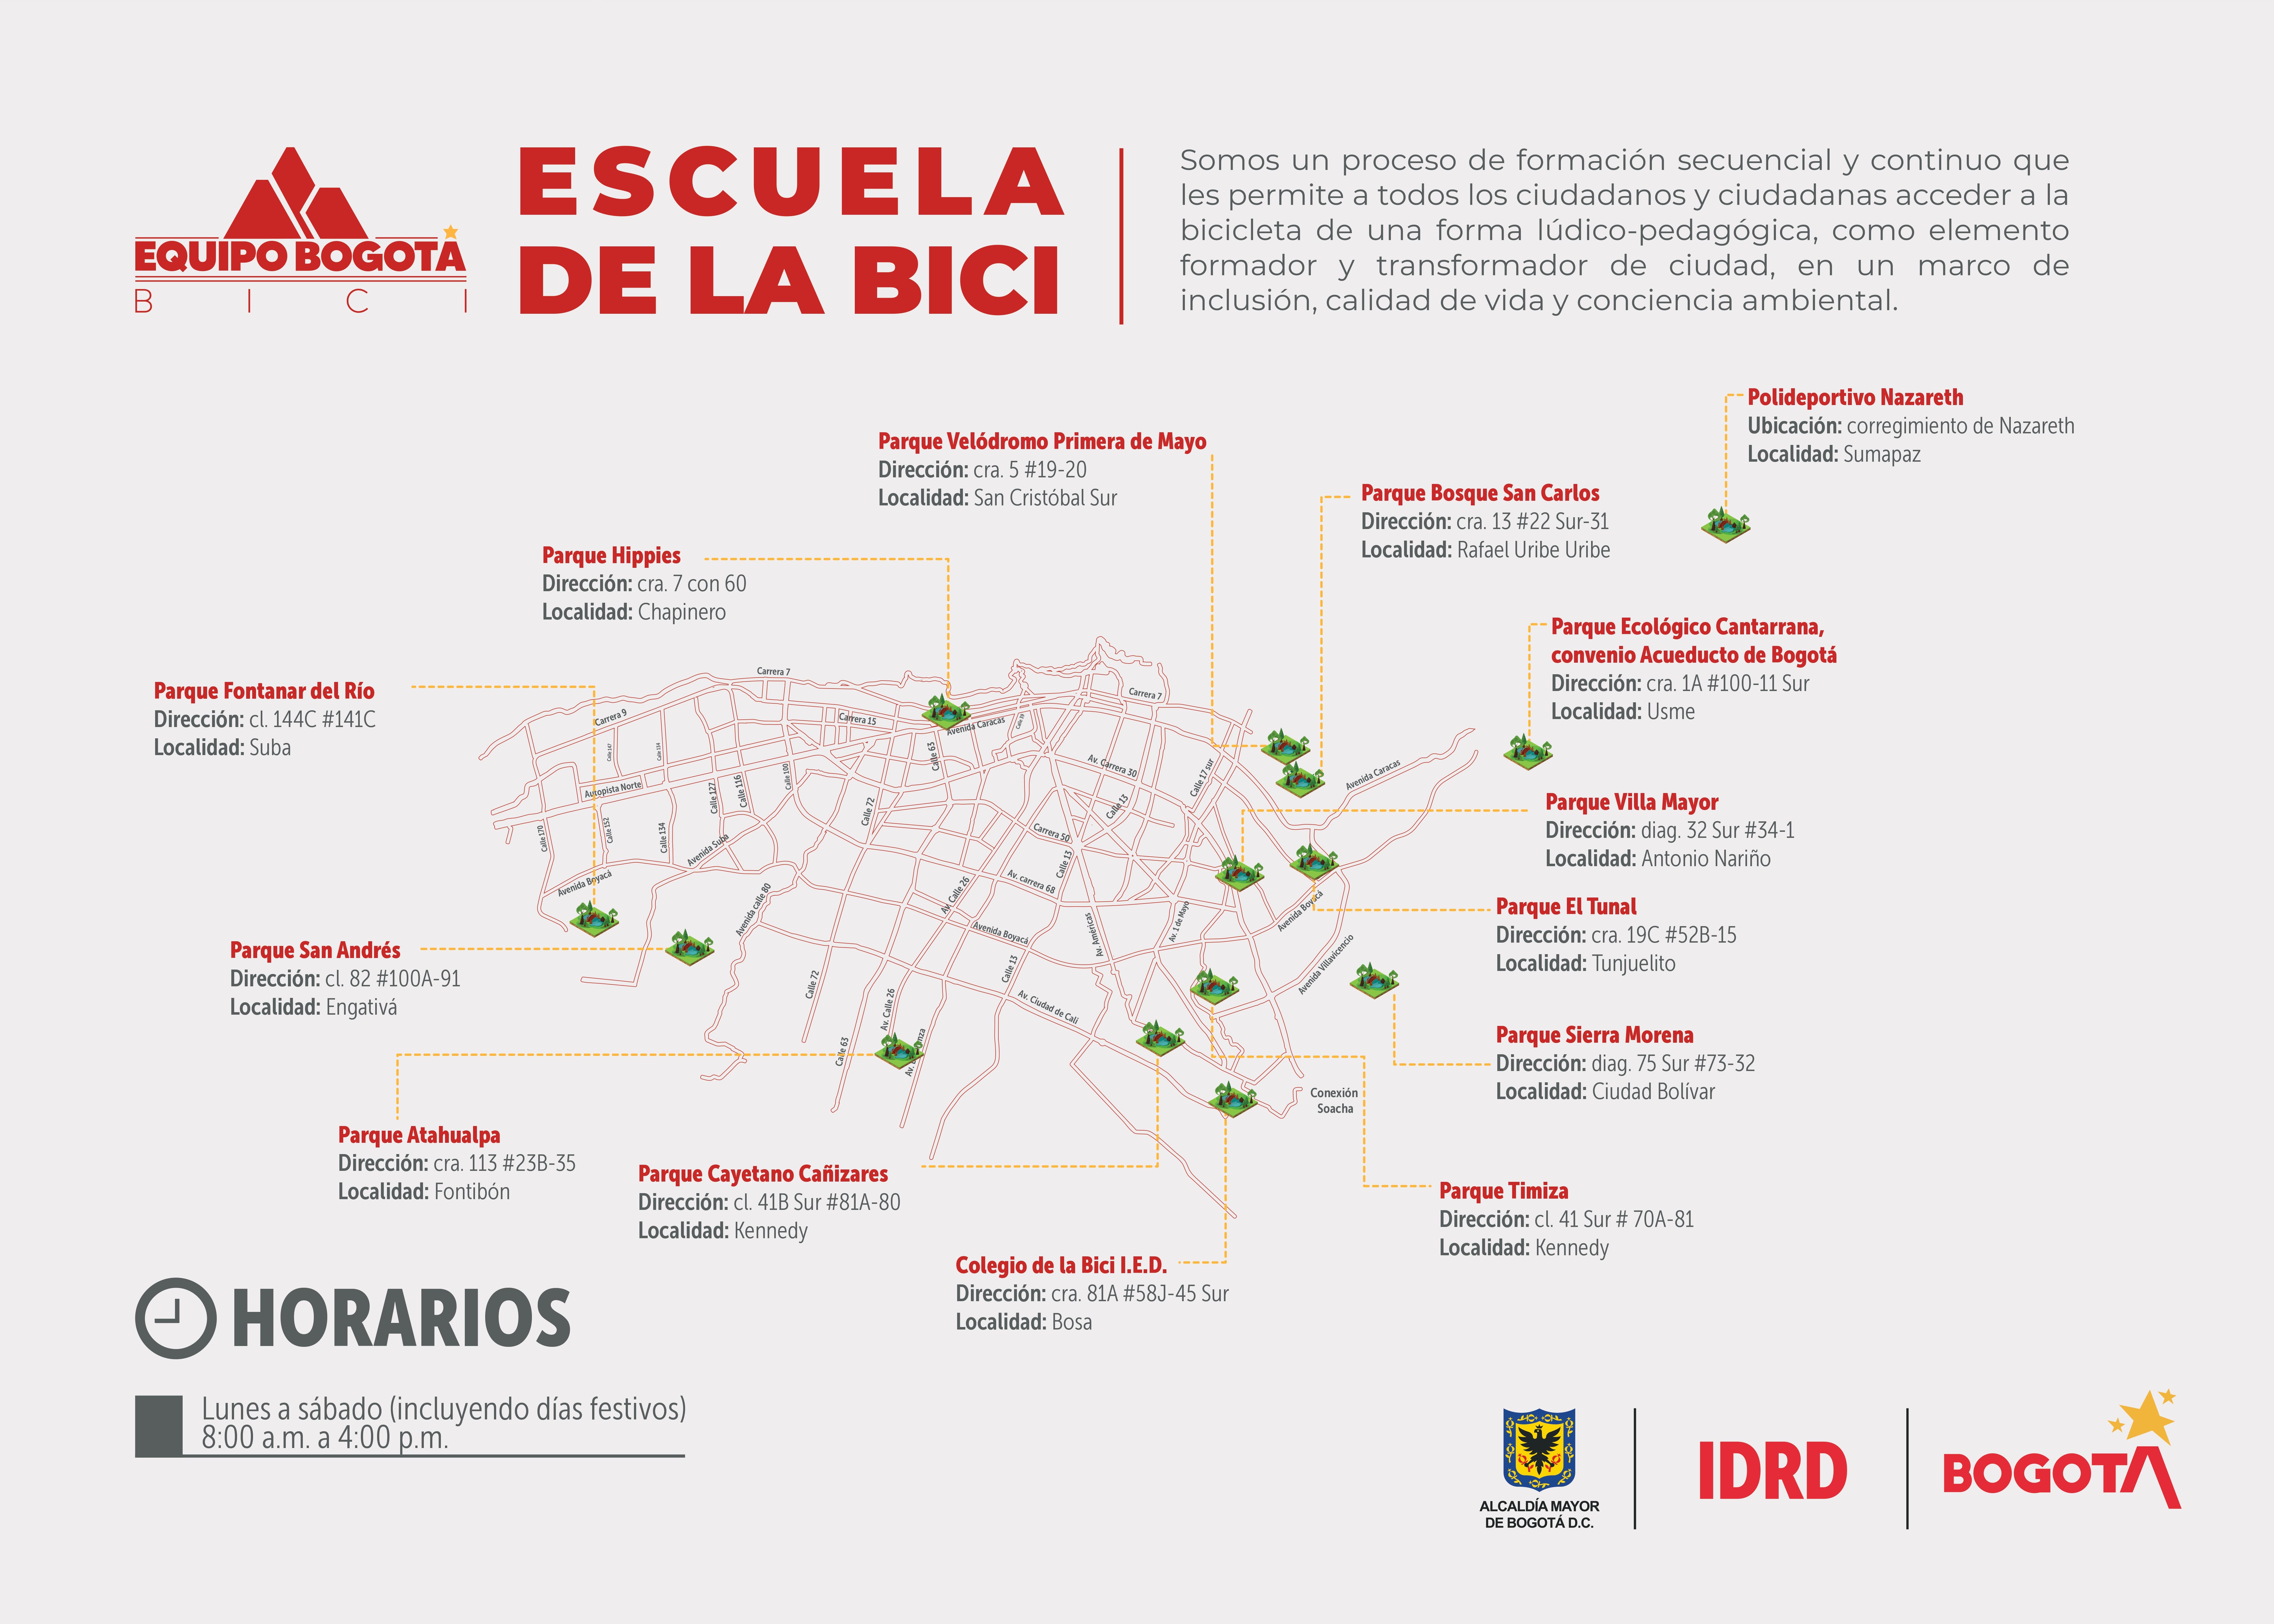 Mapa de la Escuela de la Bici con el IDRD